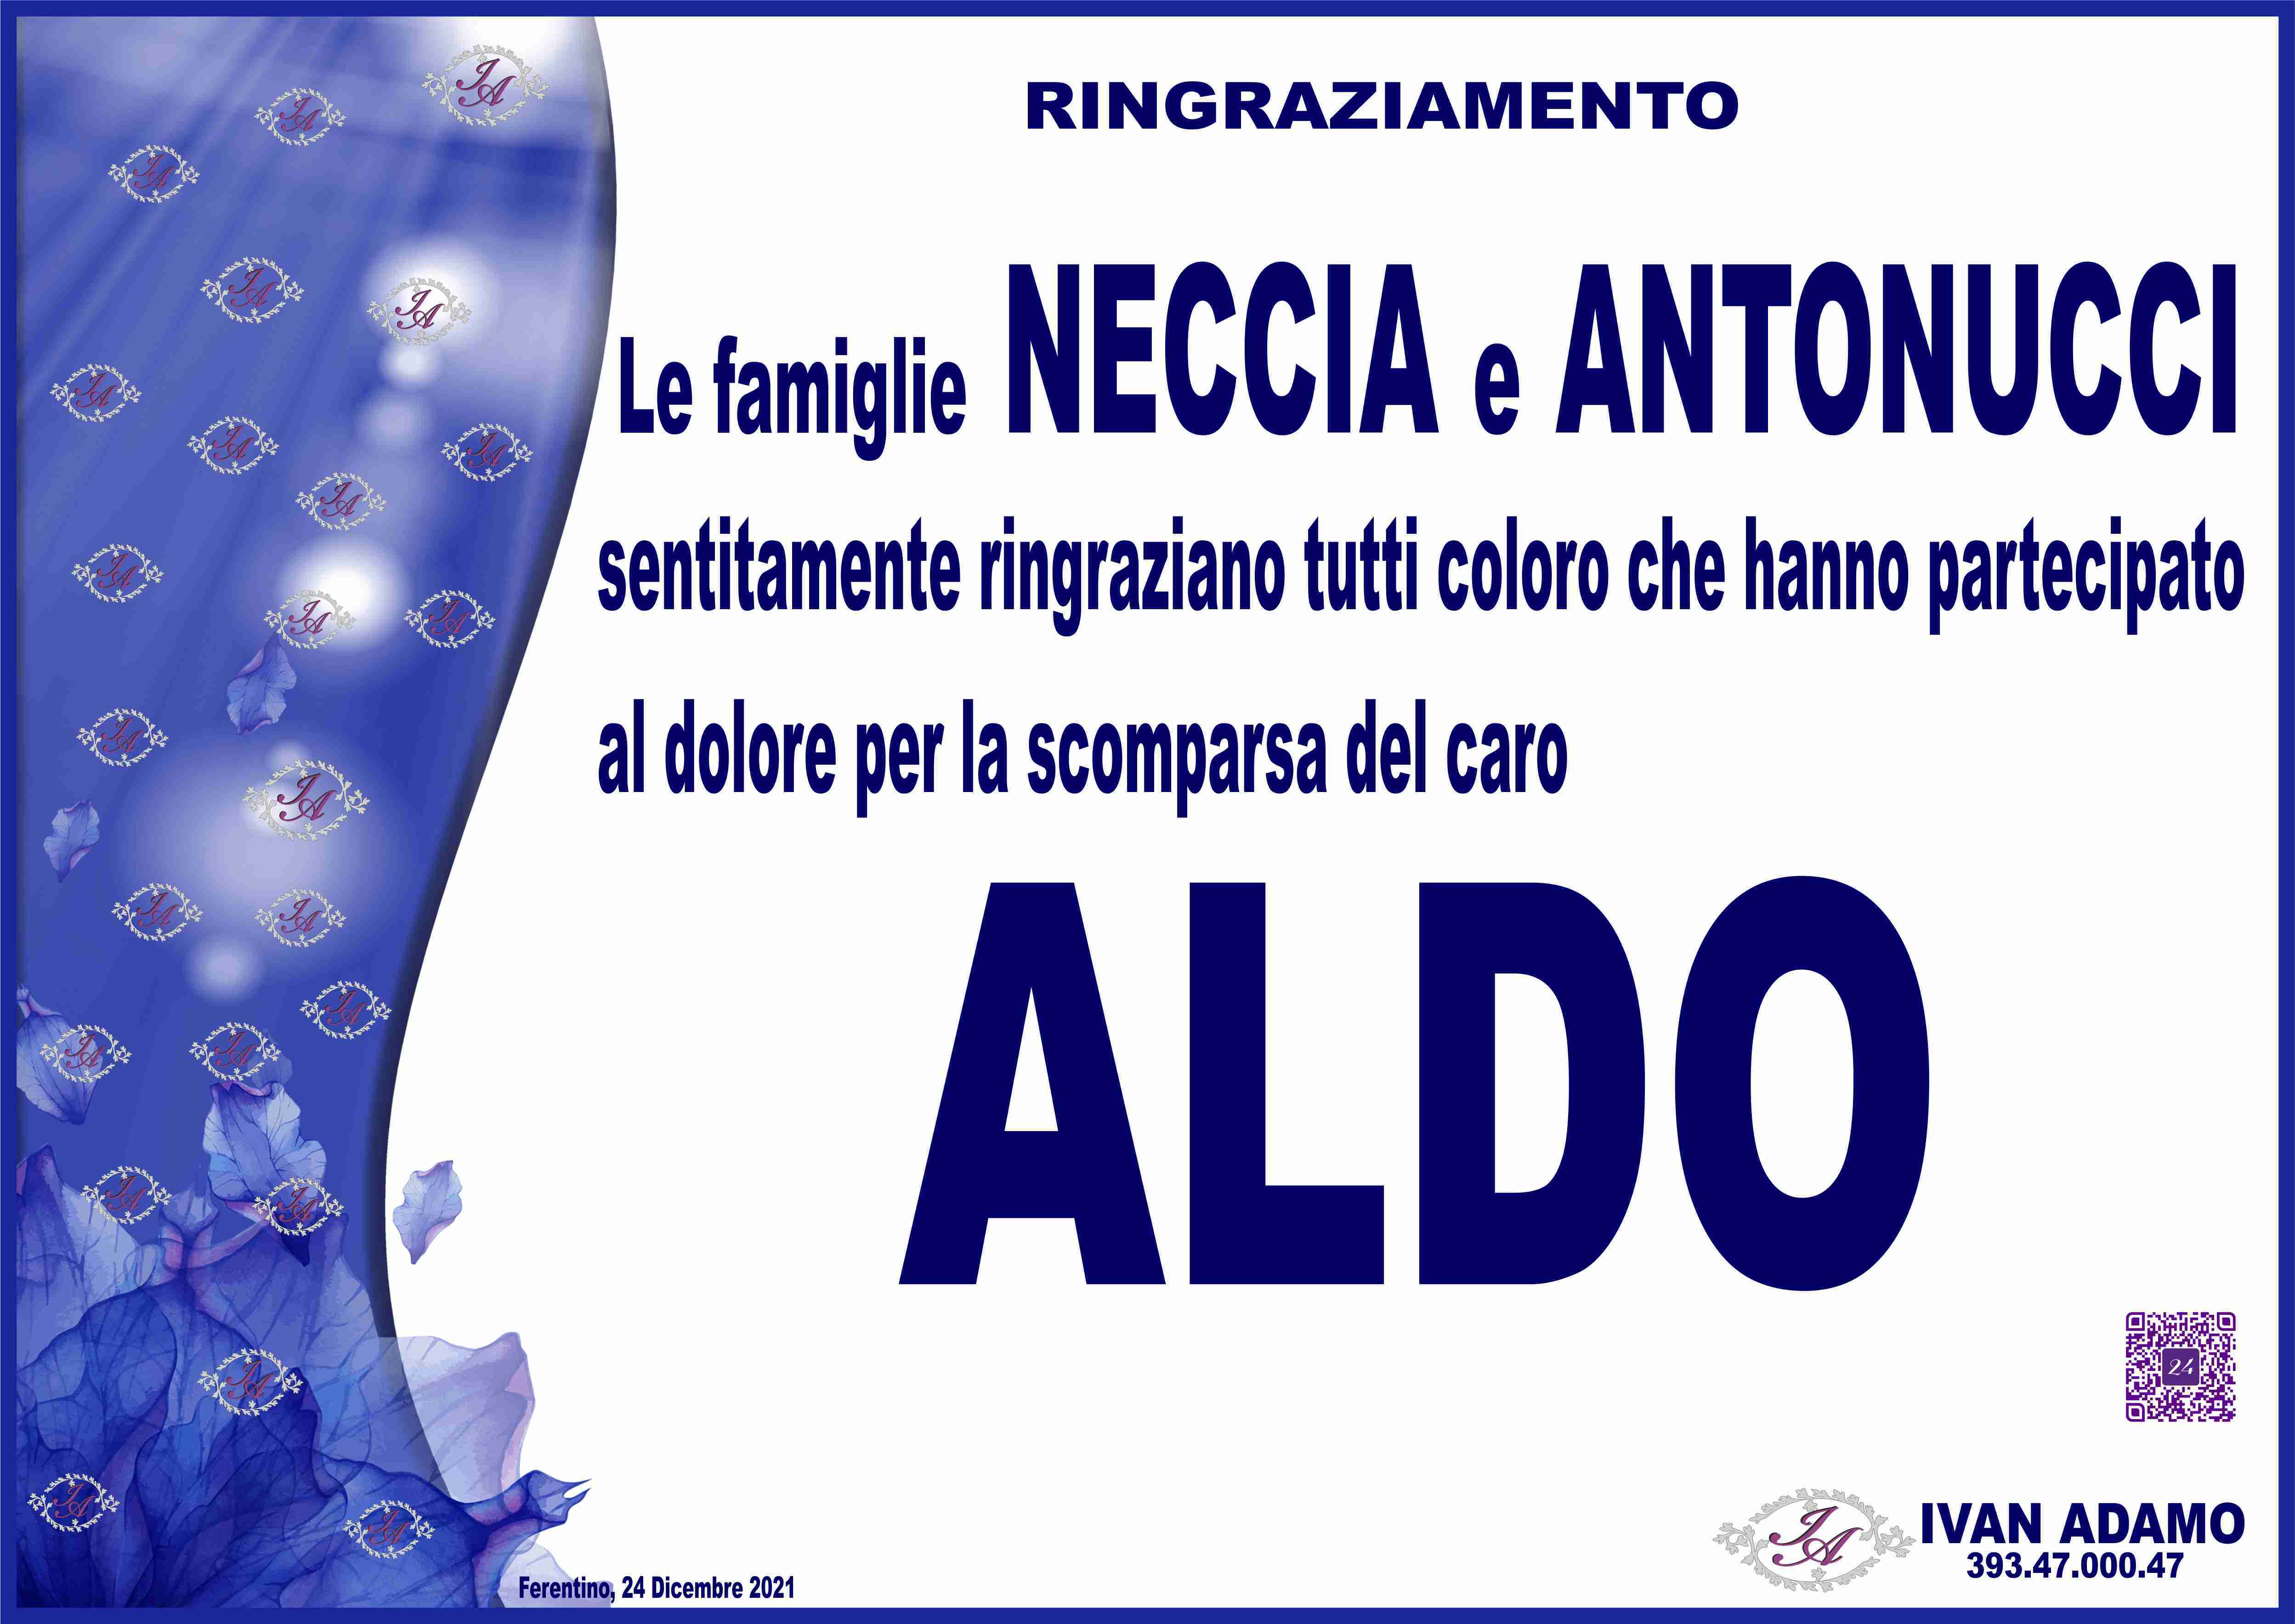 Aldo Neccia